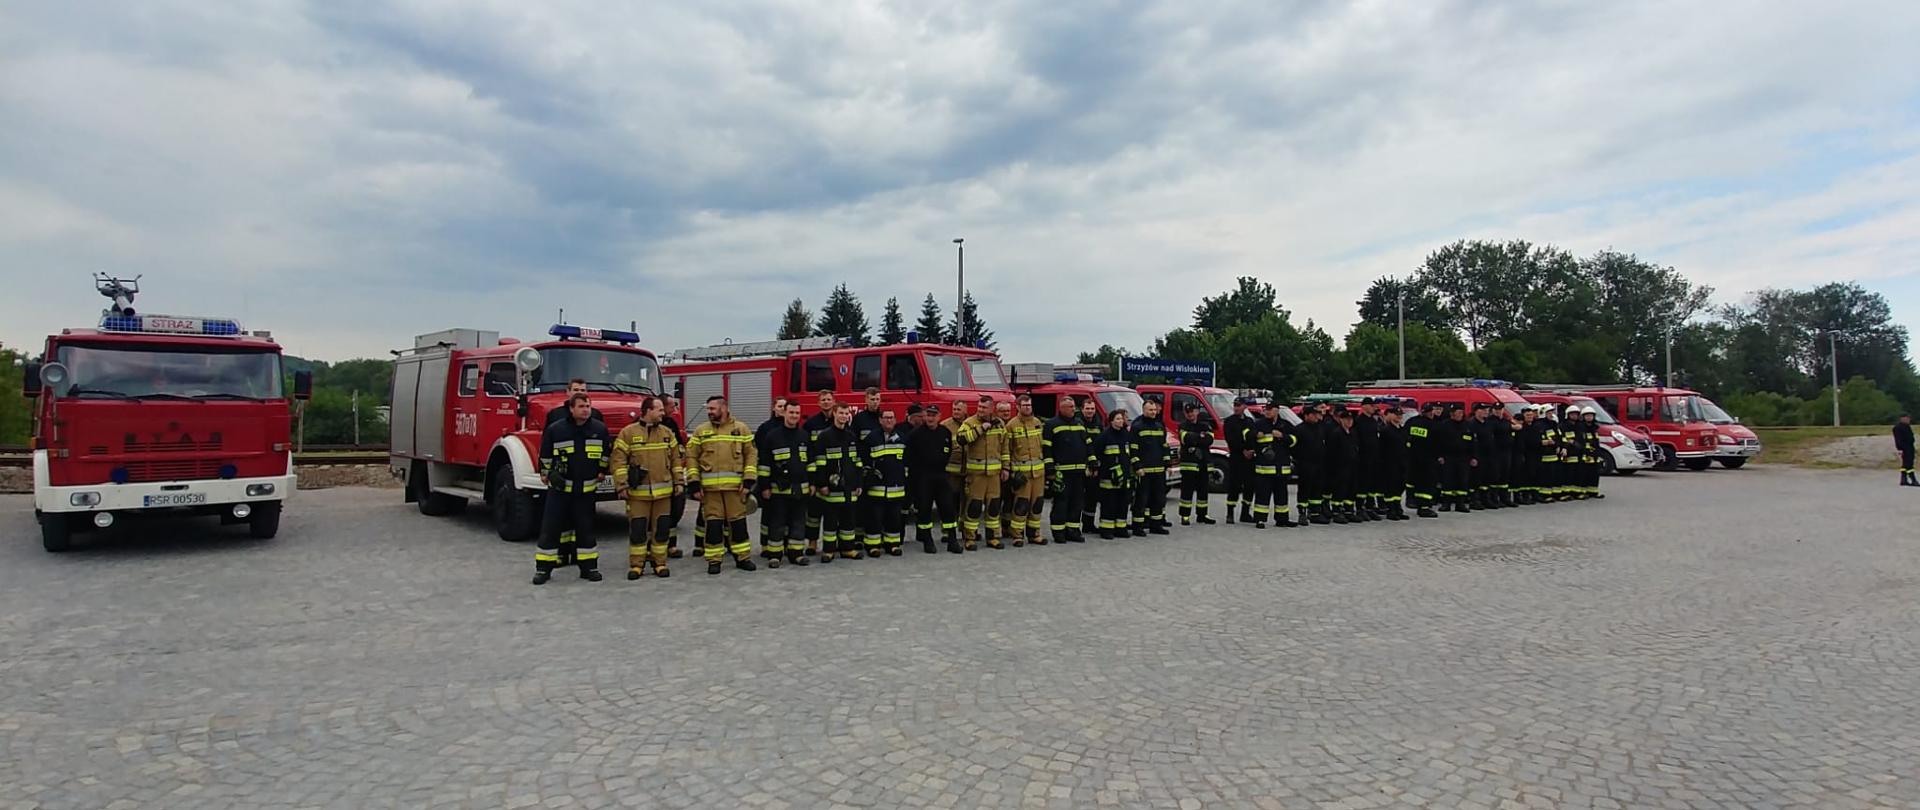 Na zdjęciu widoczna zbiórka pododdziałów jednostek OSP z terenu Powiatu Strzyżowskiego. Za nimi widoczne samochody pożarnicze. W tle drzewa